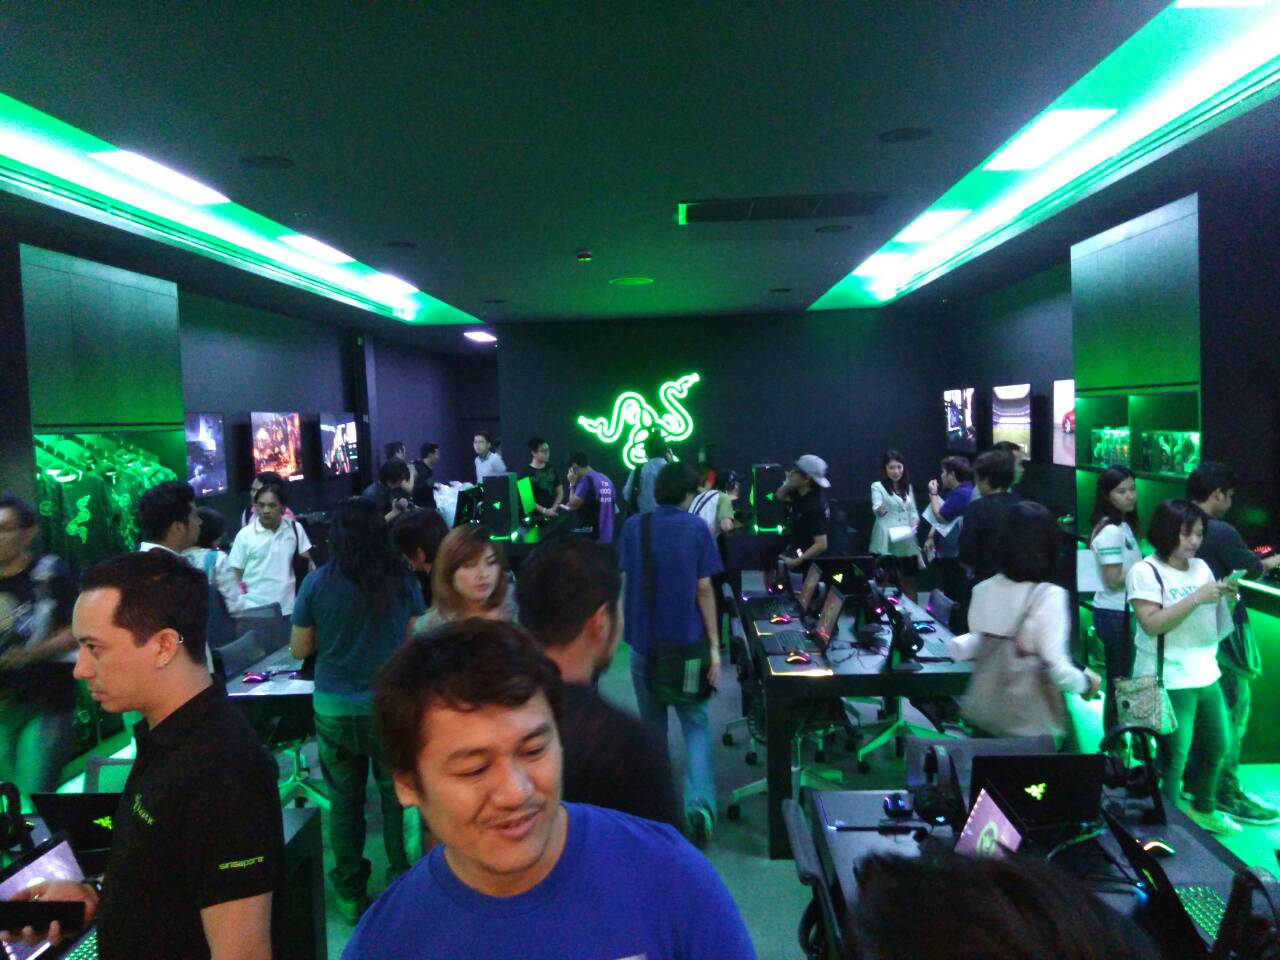 มาแล้ว !! เปิดตัว Razer Store TH สาขาใหญ่ที่สุดในประเทศไทย